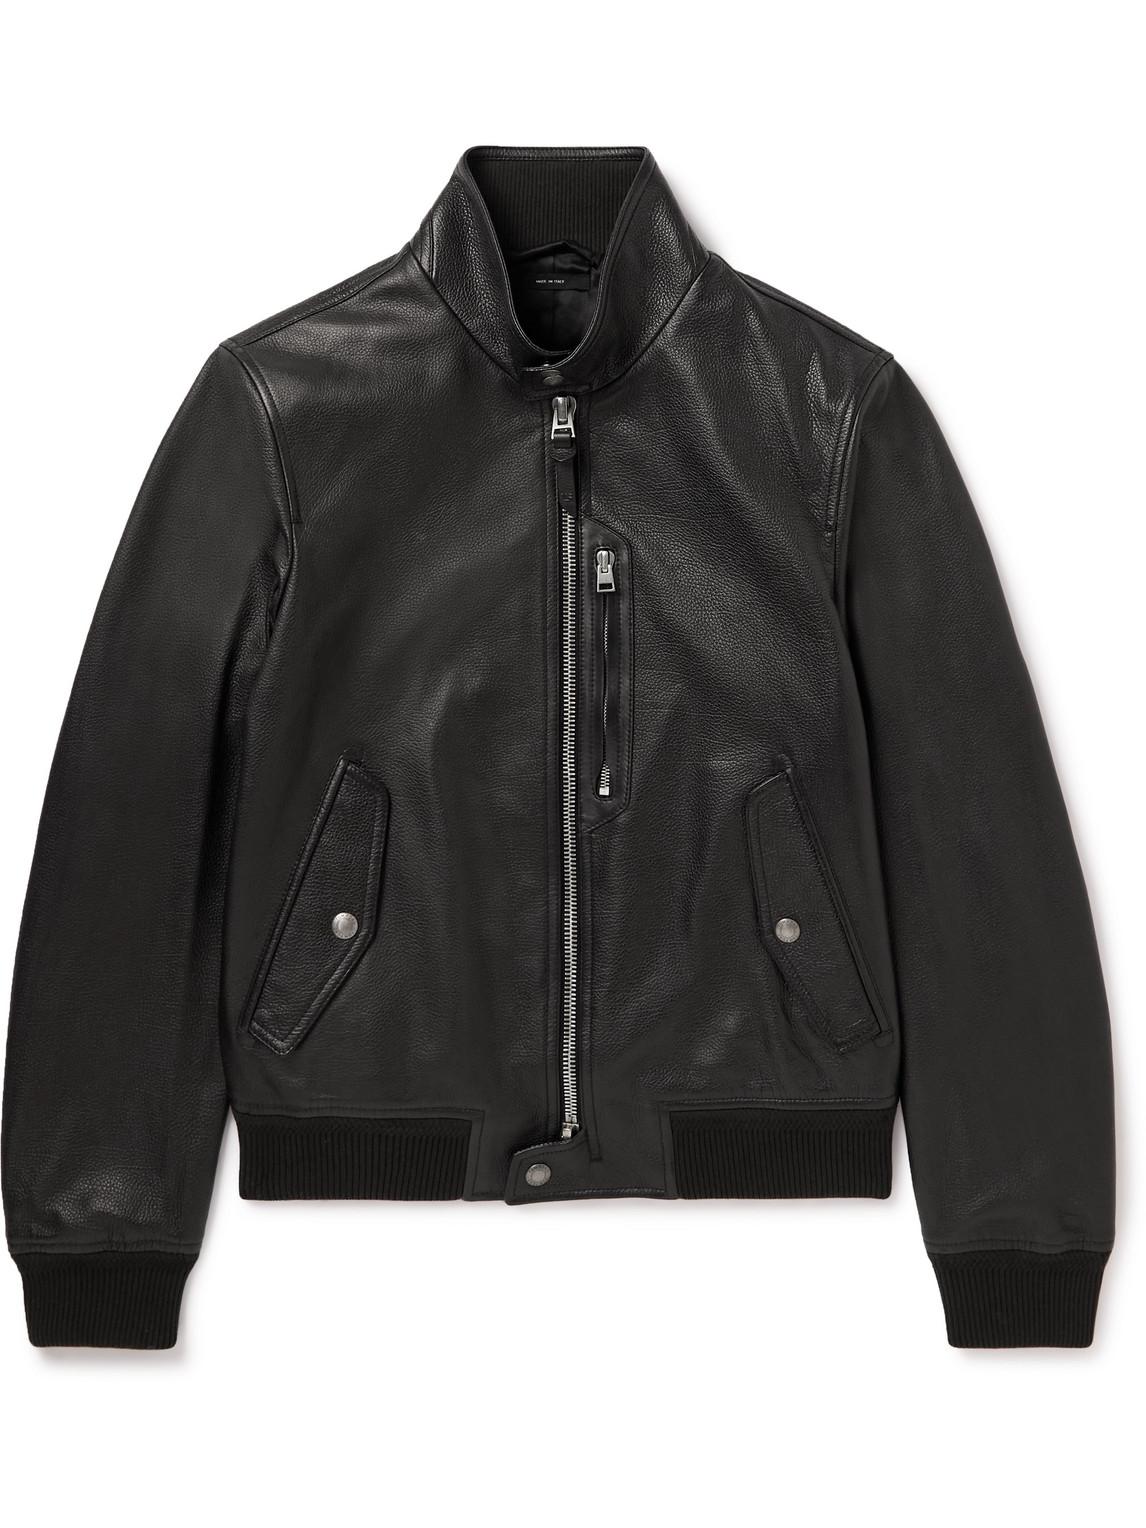 Tom Ford Full-grain Leather Jacket in Black for Men | Lyst